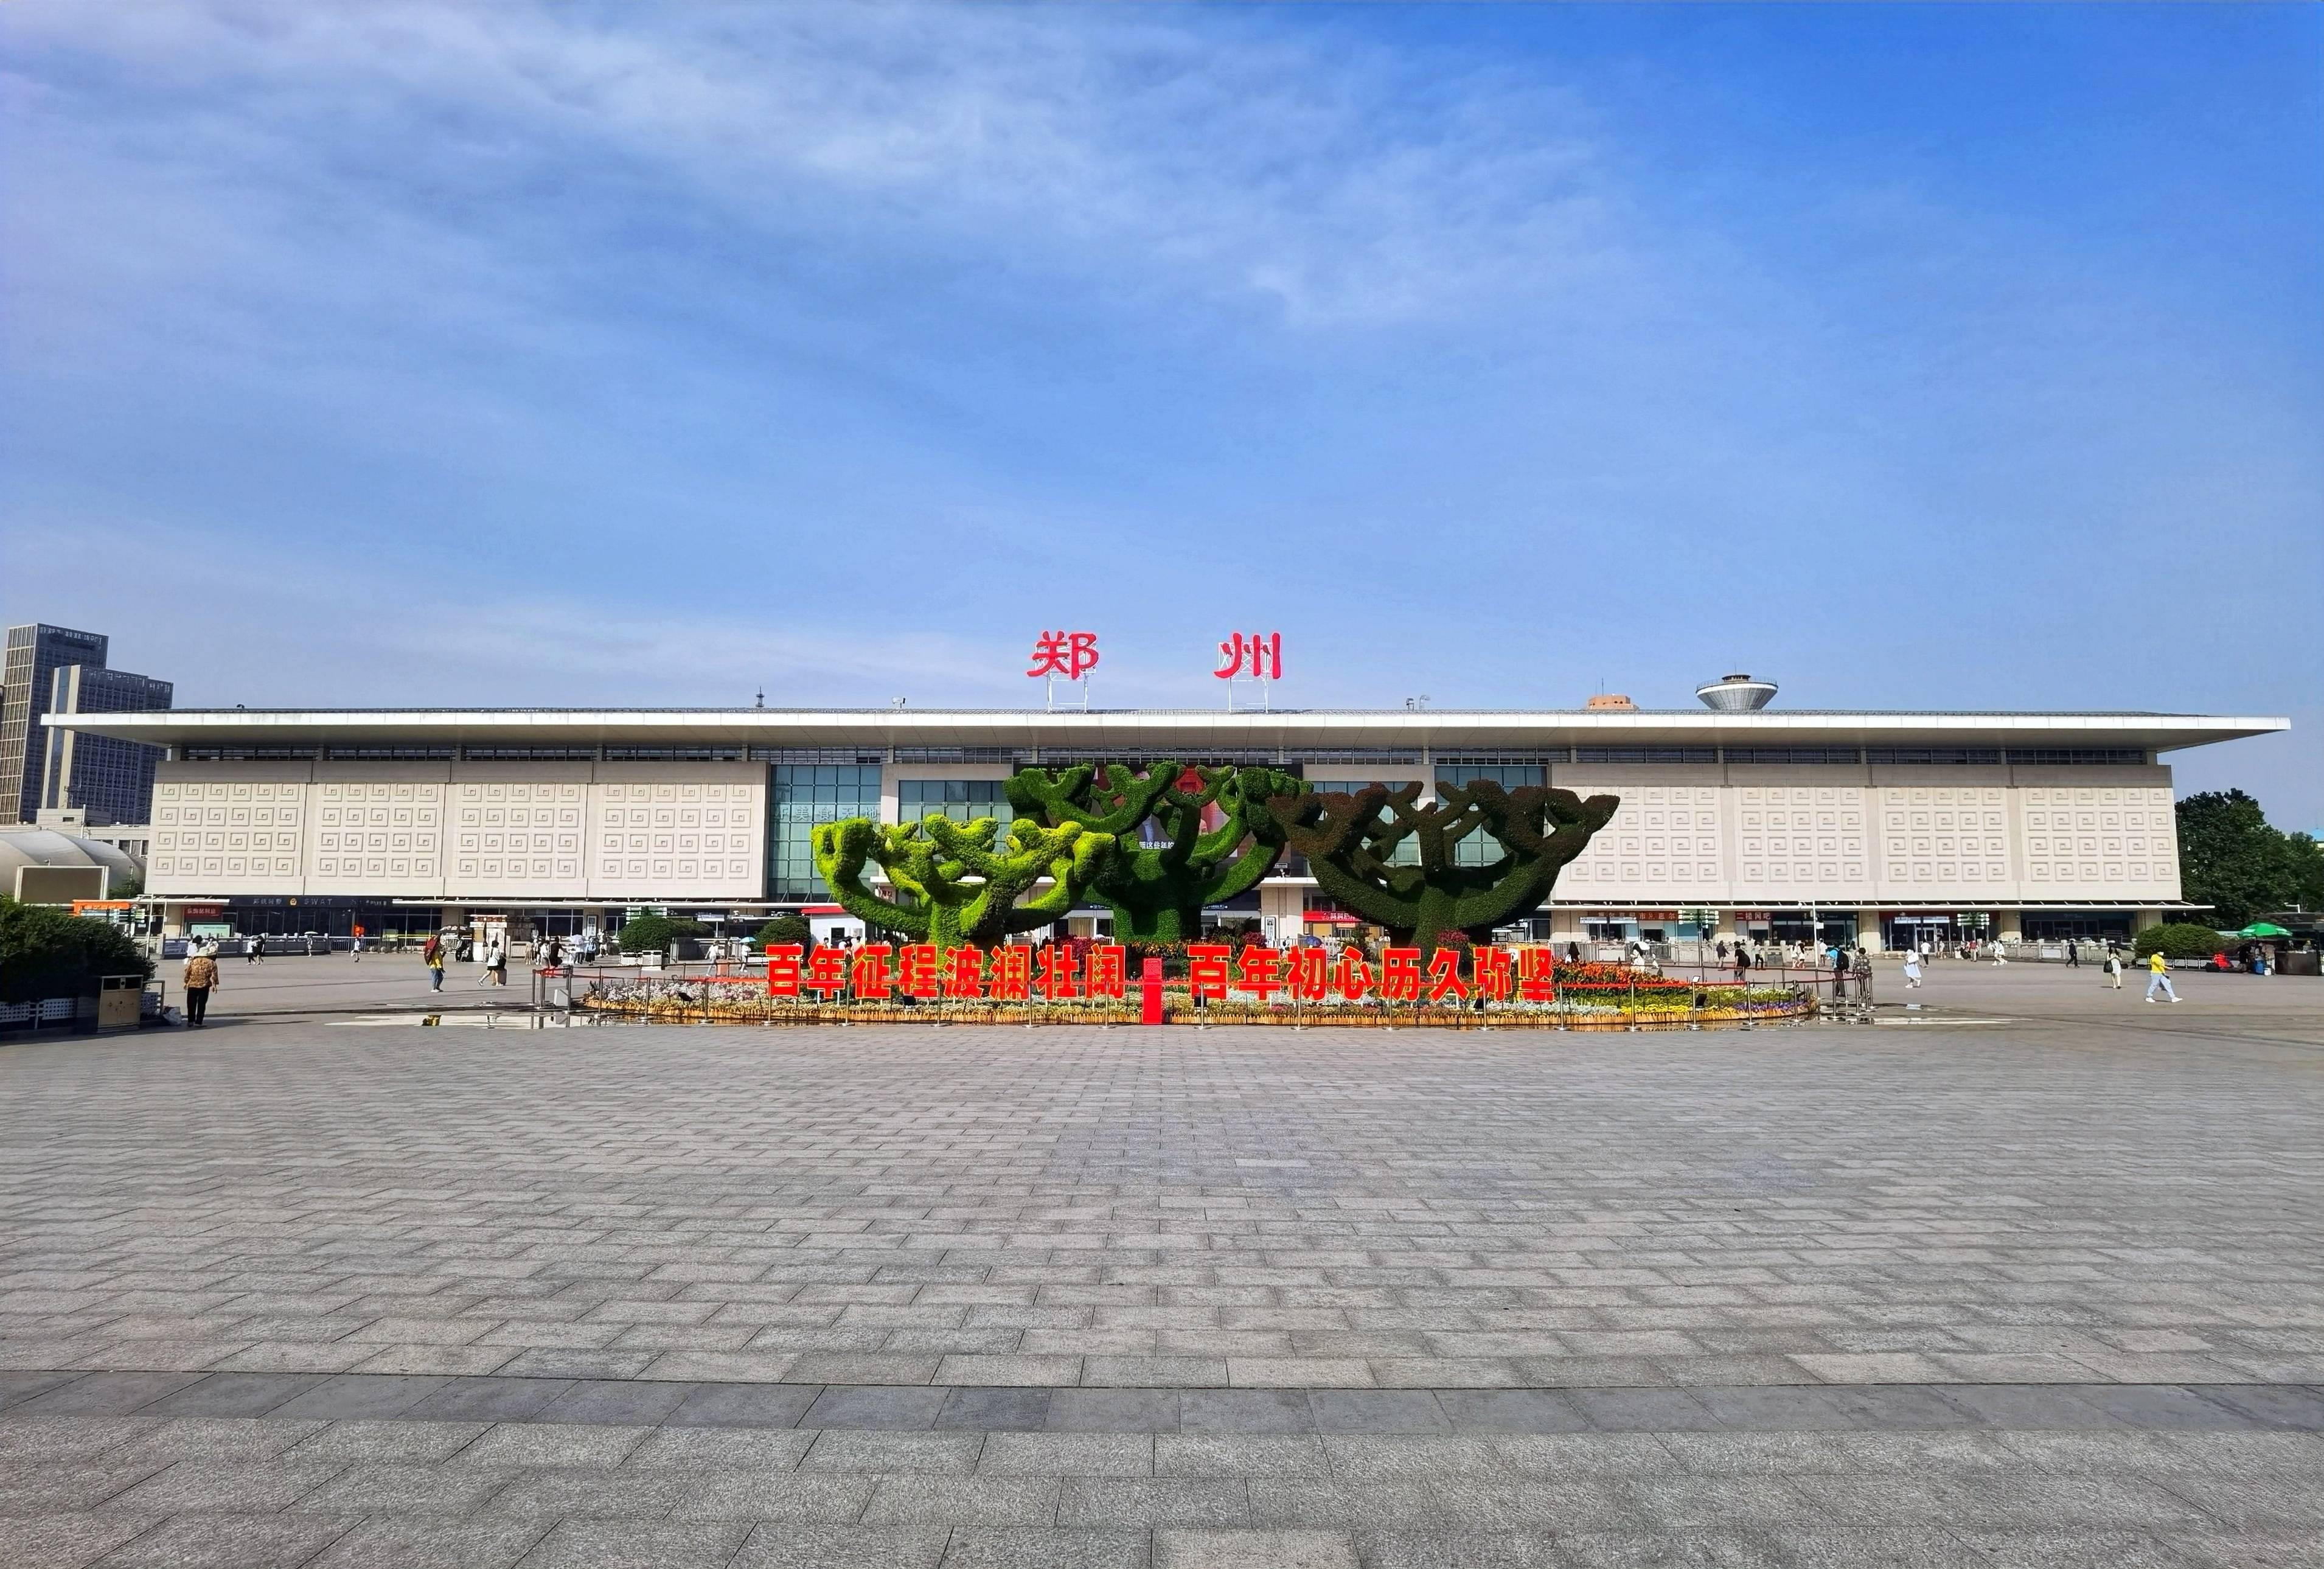 郑州火车站西广场花坛造型寓意,繁荣发和谐共生